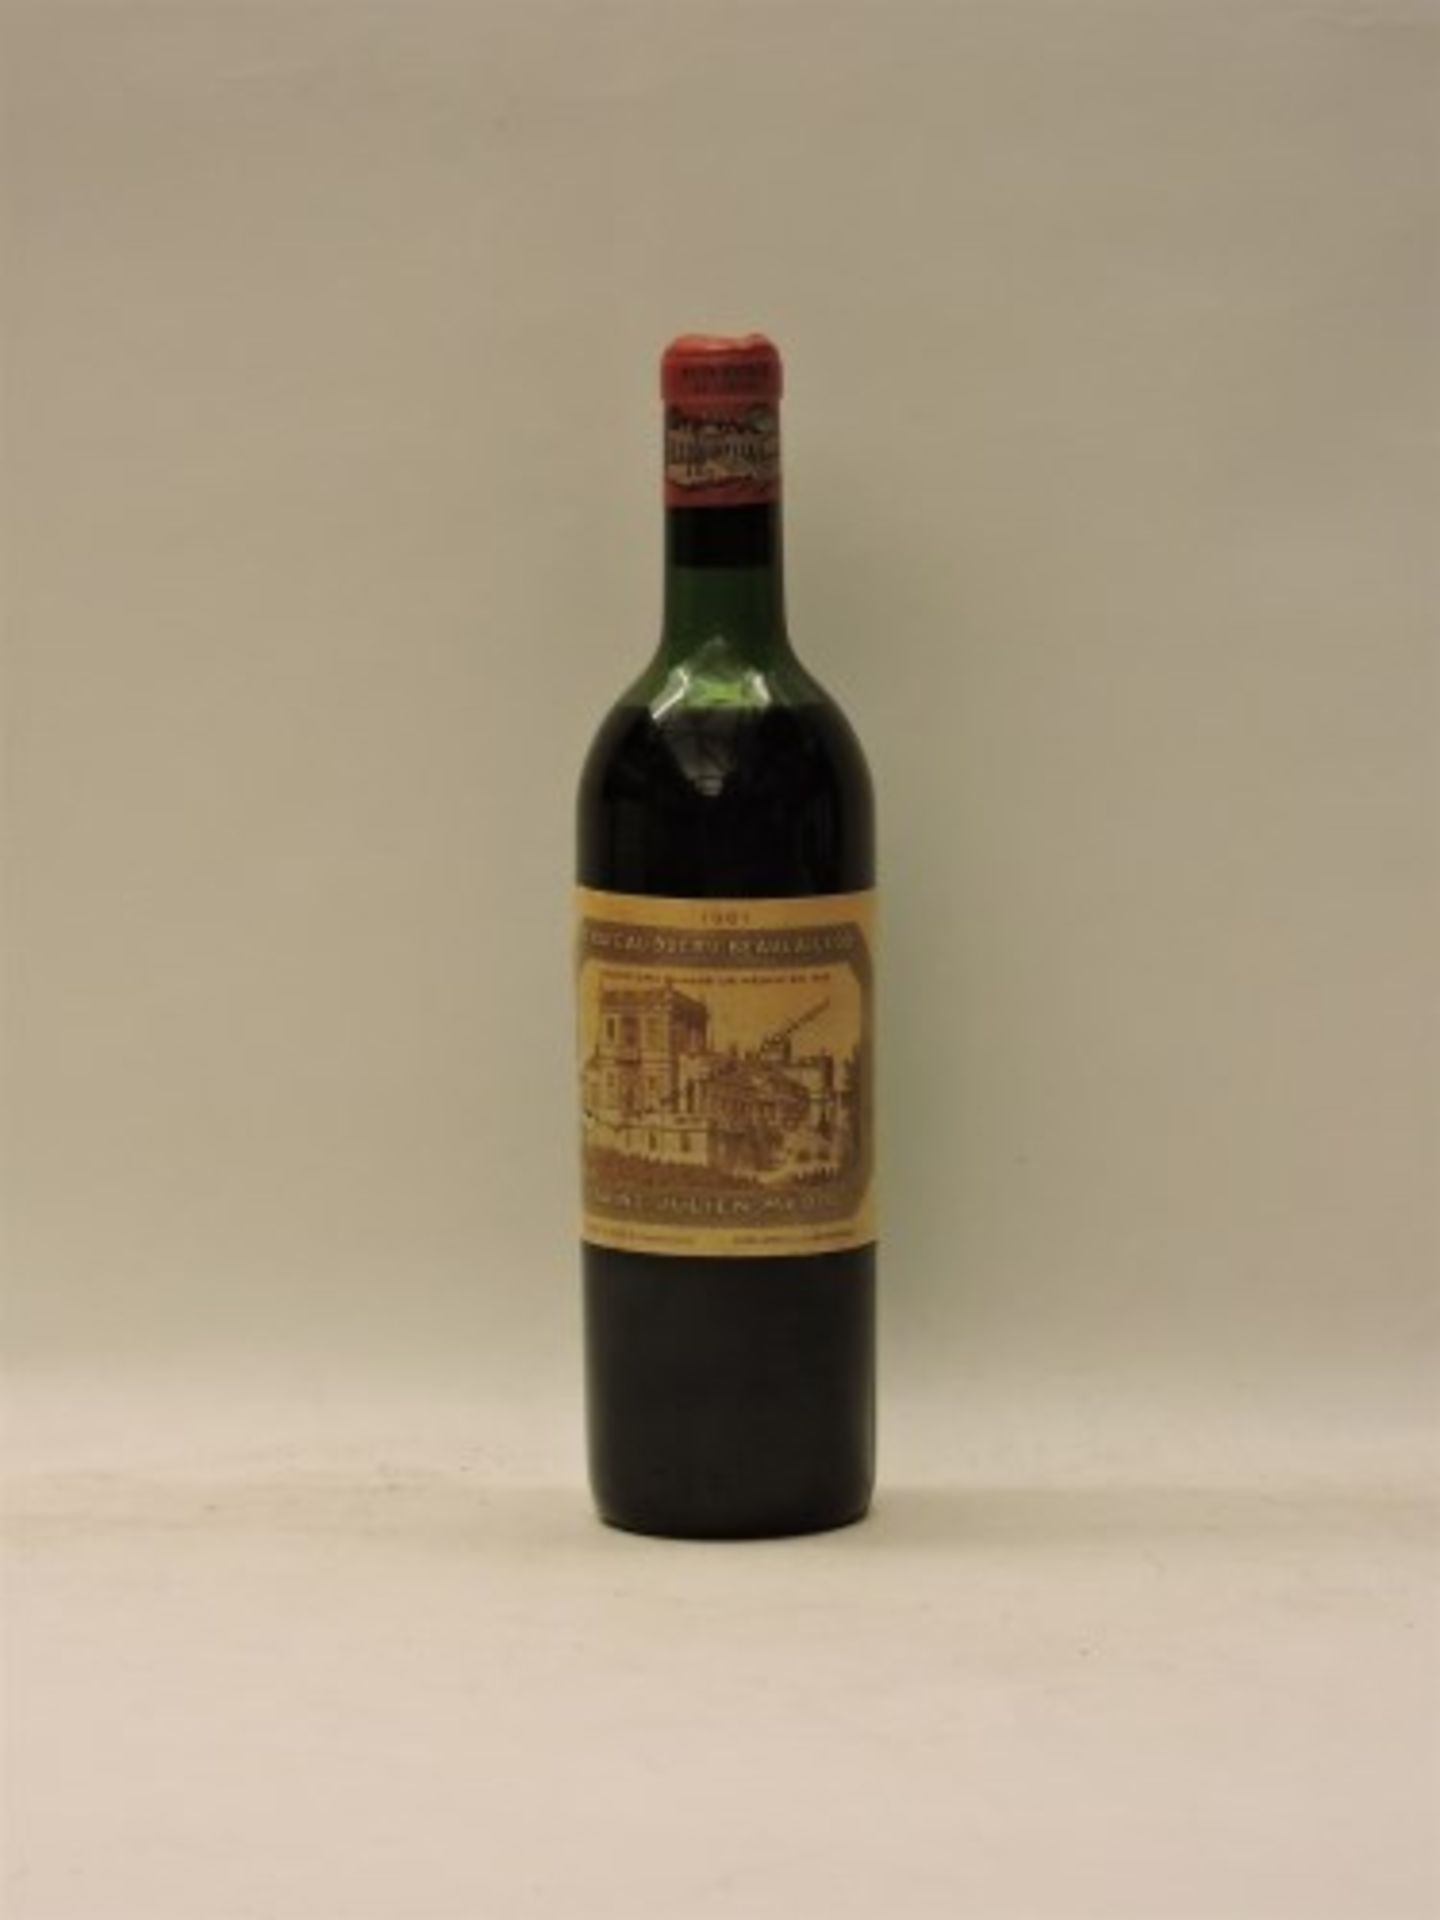 Château Ducru-Beaucaillou, Saint-Julien, 2nd Growth, 1961, one bottle (mid shoulder)